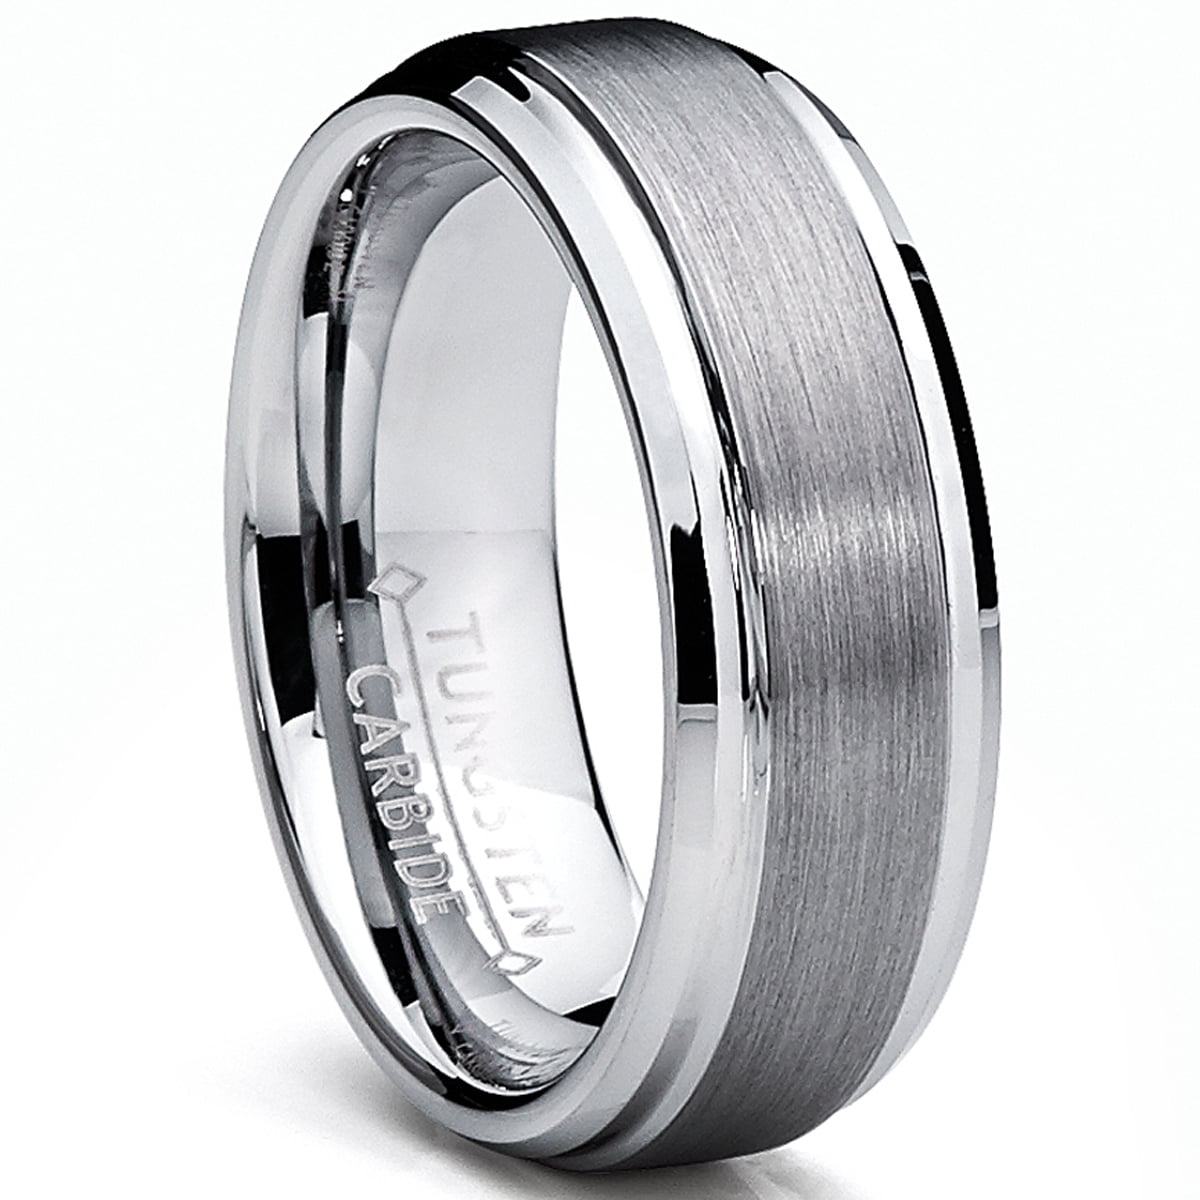 Wedding Band NEW Plain Highly Polished Men's Titanium Ring size 11 Gift Box 